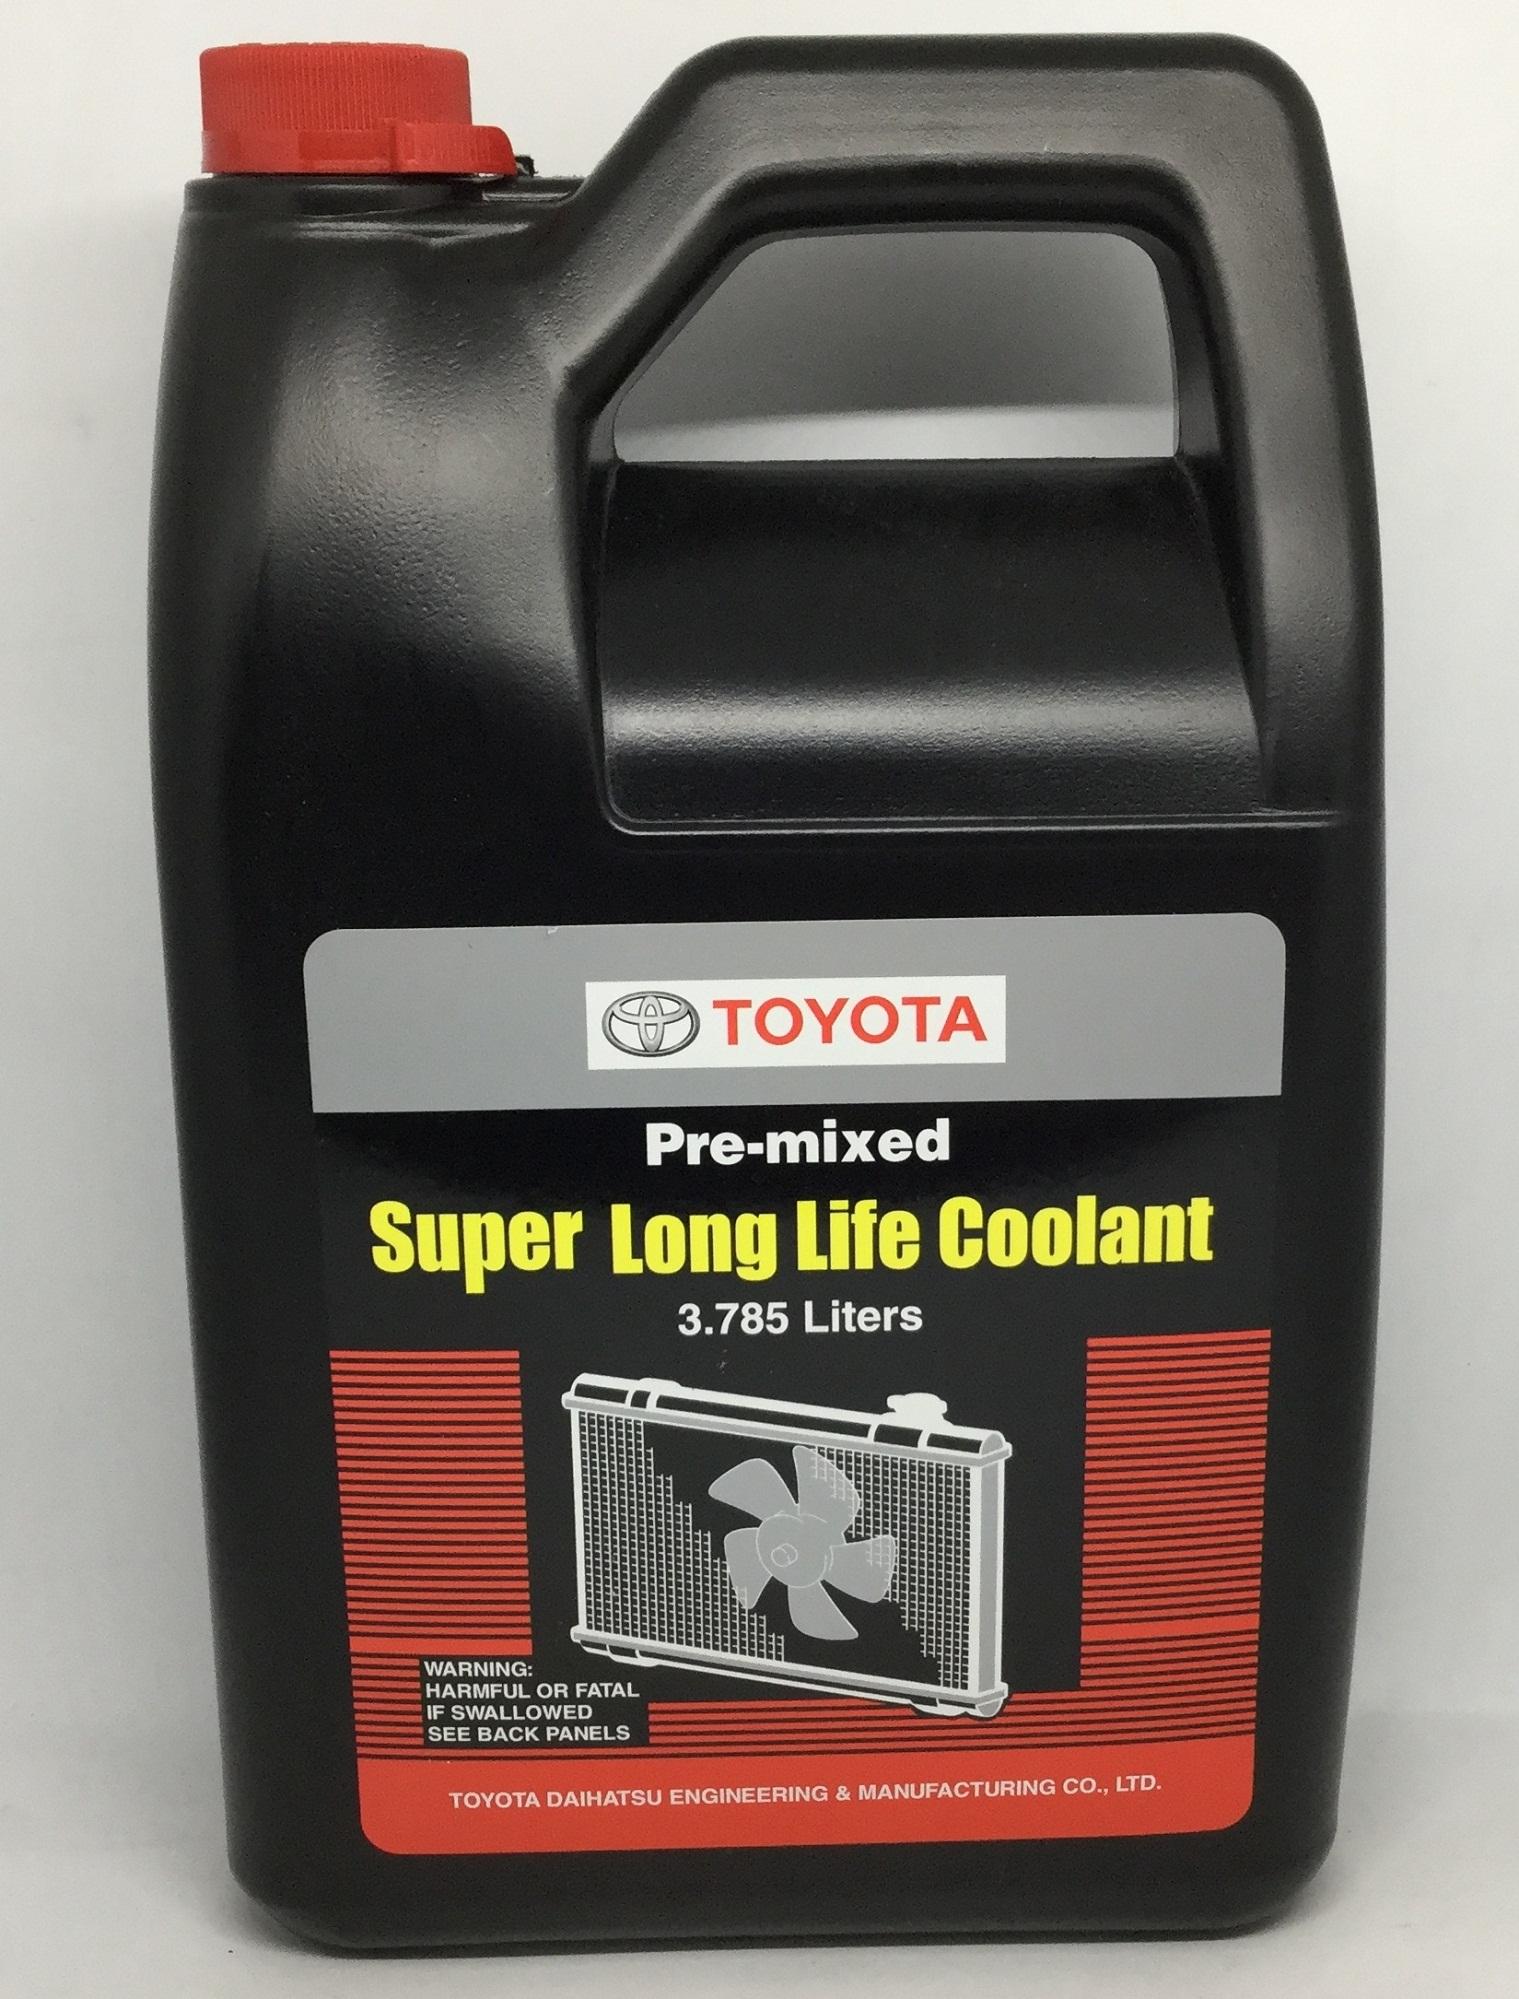 [3.785 ลิตร] TOYOTA น้ำยาเติมกันสนิมหม้อน้ำ สีชมพู Pre-mixed Super Long Life Coolant 3.785 ลิตร แท้ศูนย์ สำหรับรถ Toyota เก๋ง ,กระบะ ทุกรุ่น